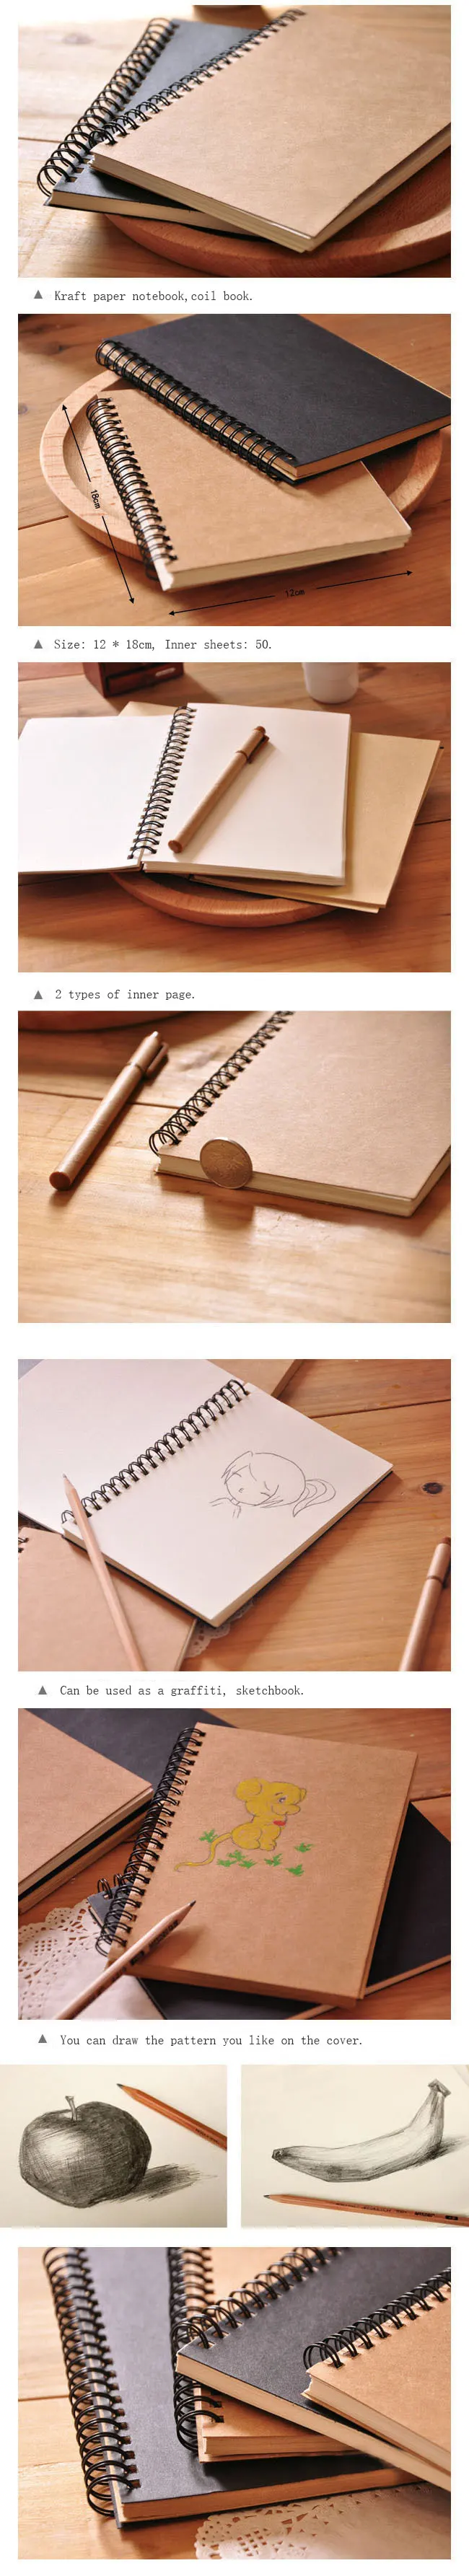 Blank Notebook A5 A6 Spiral Sketchbook Graffiti Notebook Diary Jouranl school supplies 50 Sheets Kawaii korean stationery